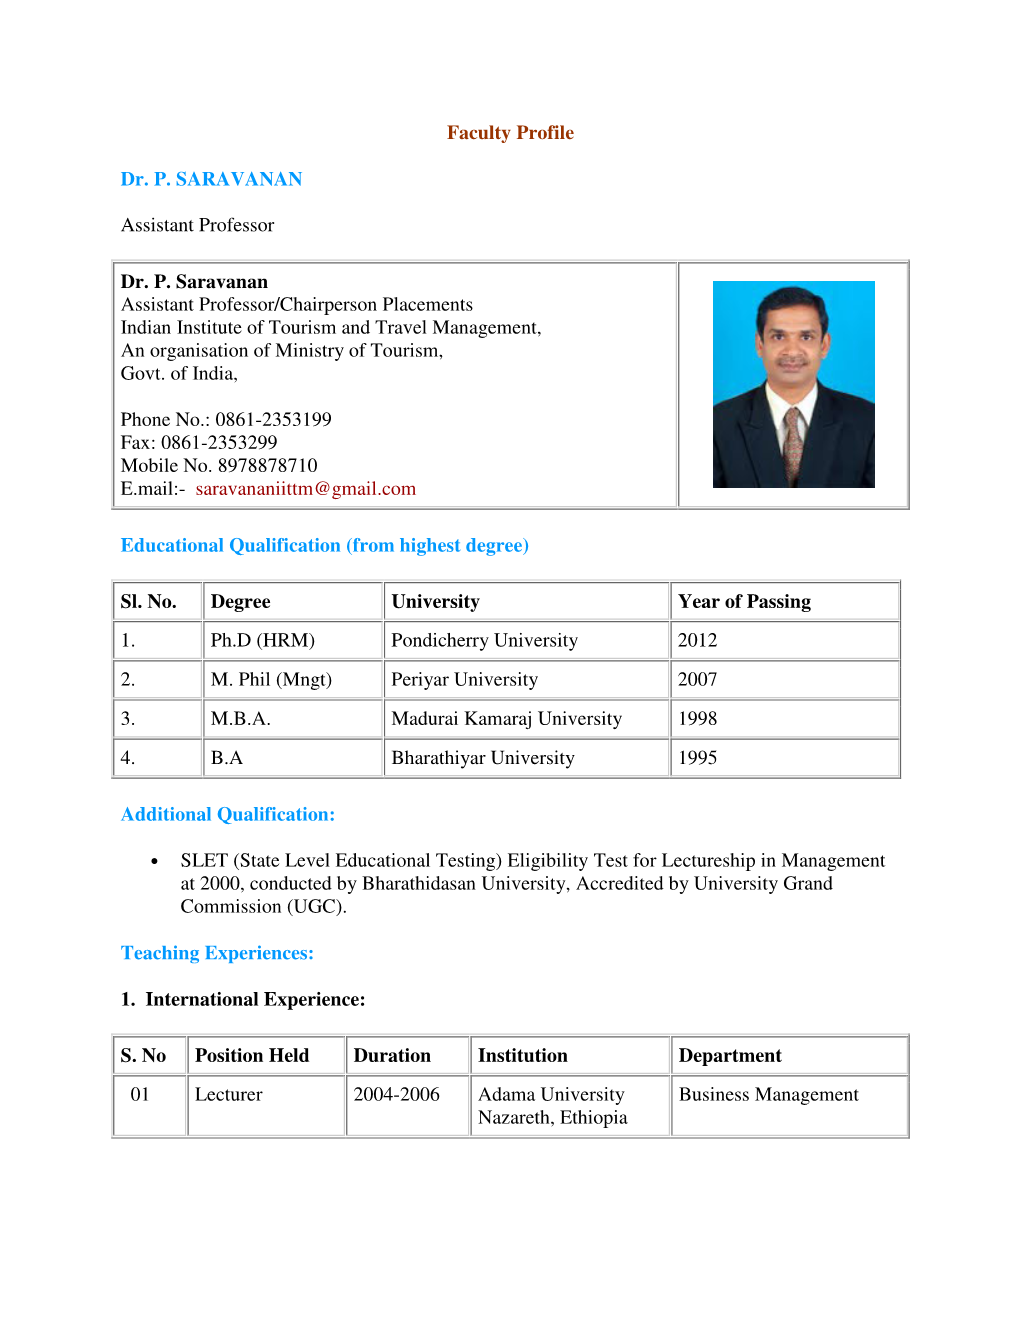 Faculty Profile Dr. P. SARAVANAN Assistant Professor Dr. P